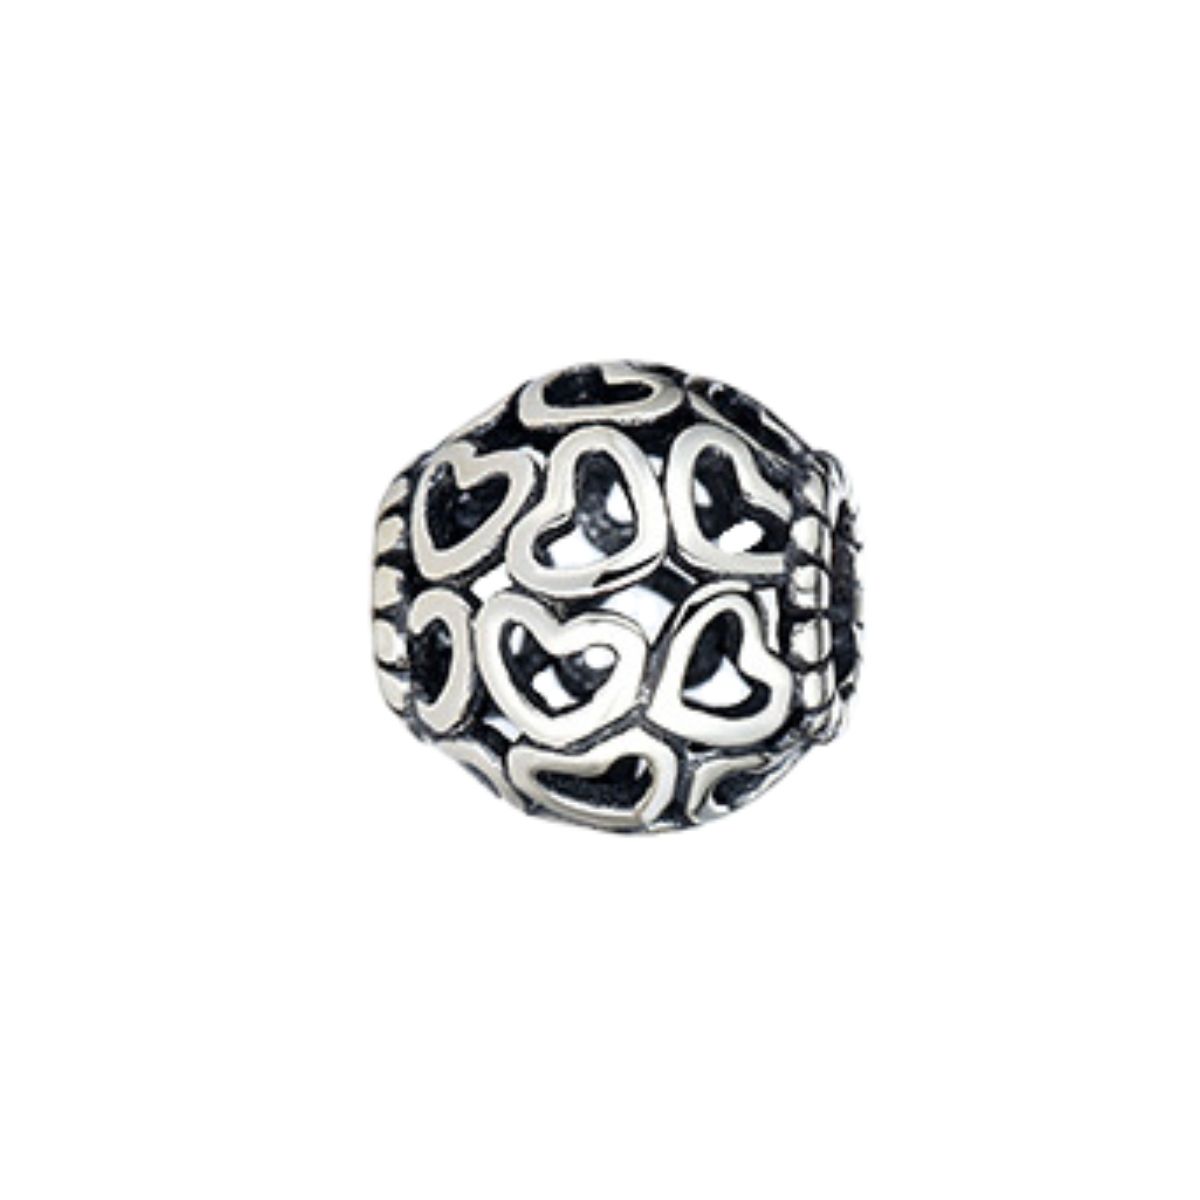 Multi hartjes bedel  heart bead  Zilverana  geschikt voor Biagi , Pandora , Trollbeads armband  925 zilver